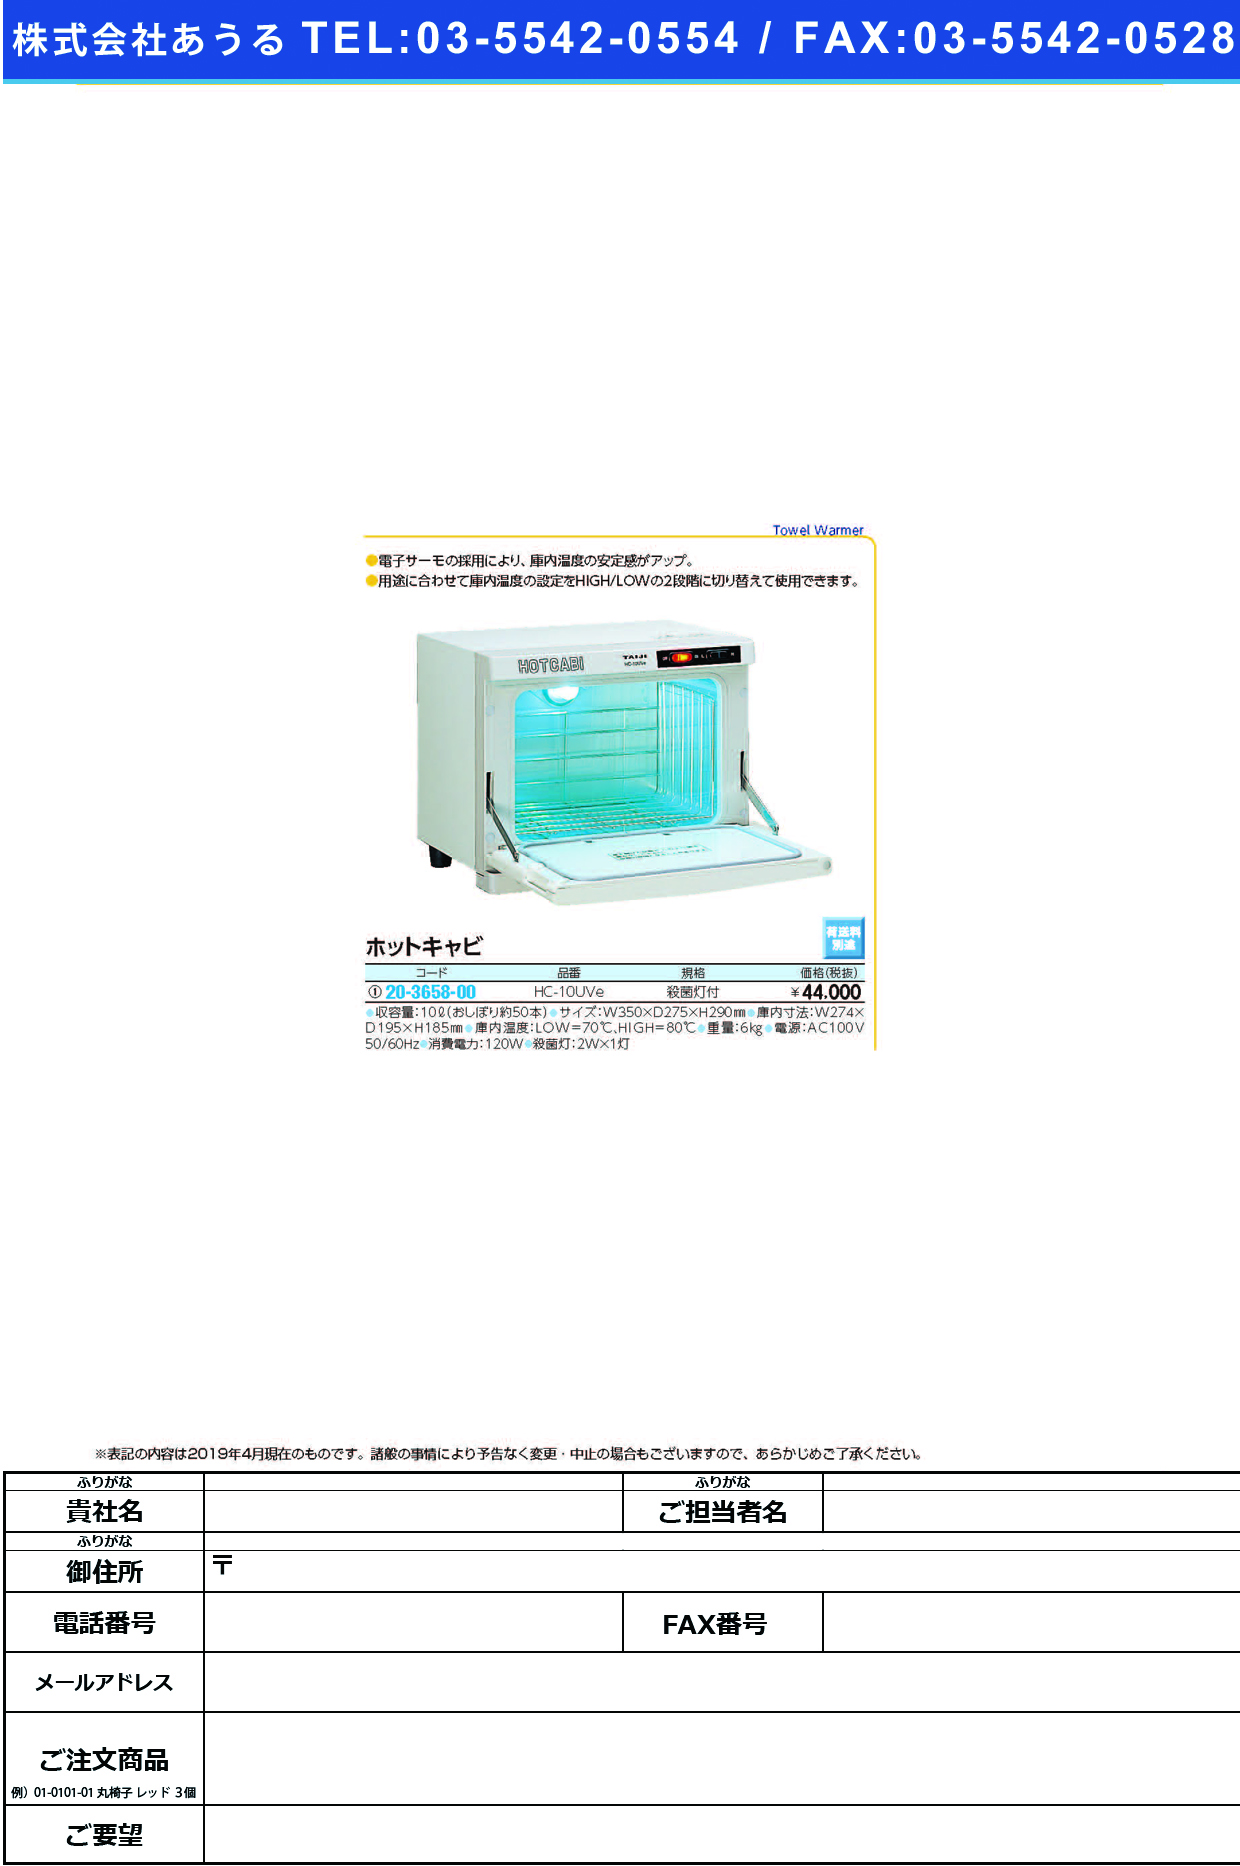 (20-3658-00)ホットキャビ HC-10UVE ﾎｯﾄｷｬﾋﾞ(タイジ)【1台単位】【2019年カタログ商品】